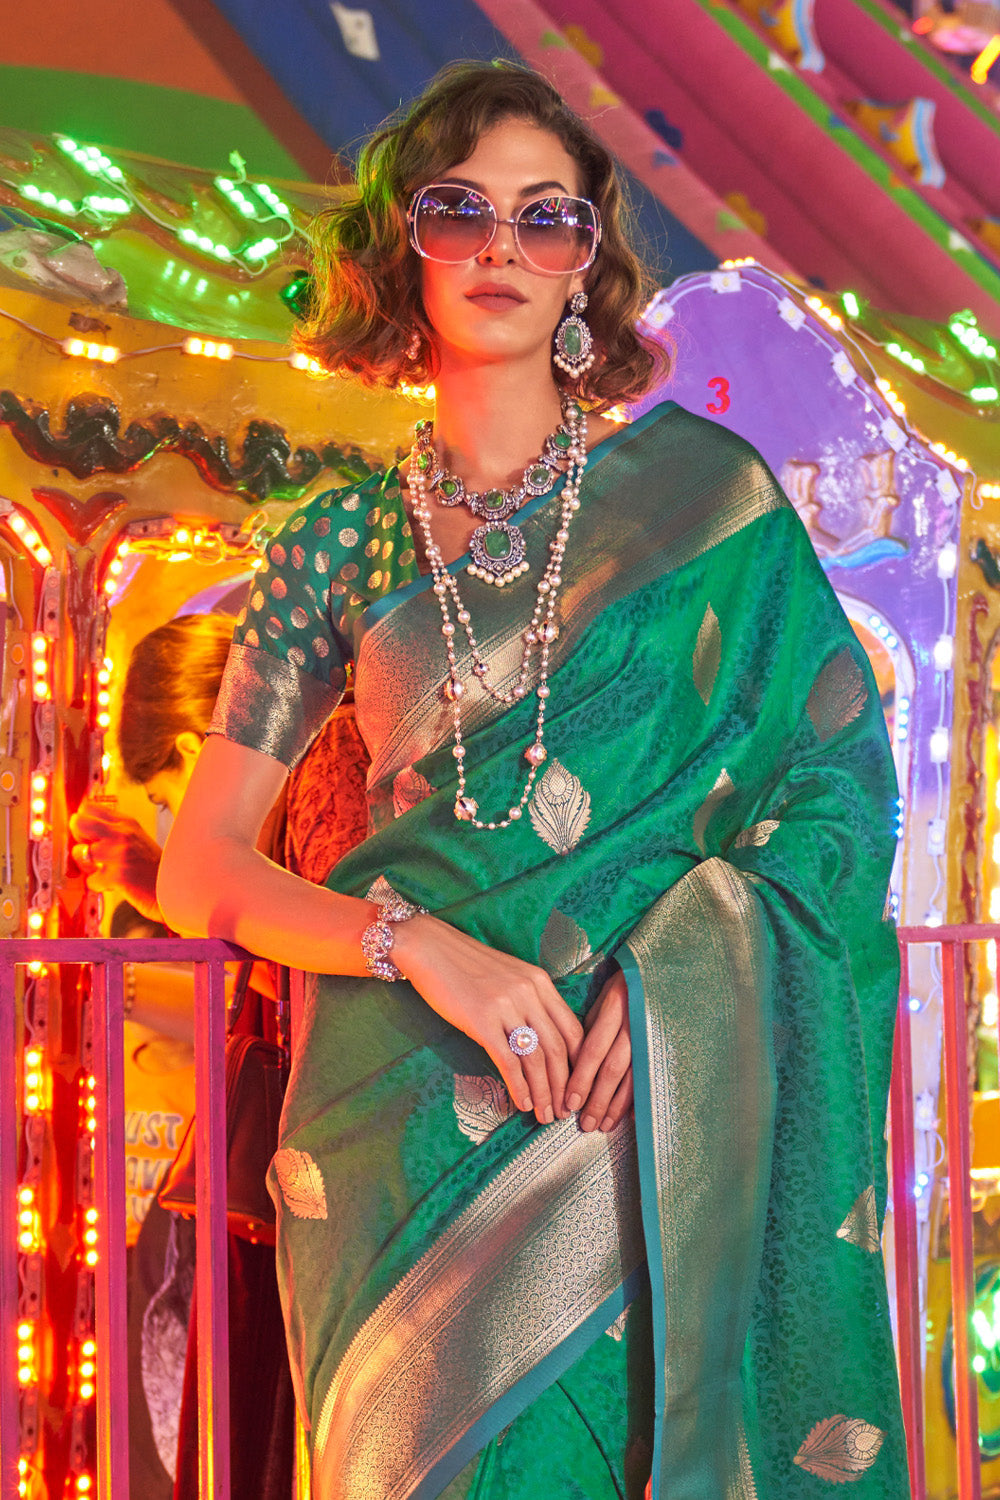 Green Banarasi Art Silk Saree